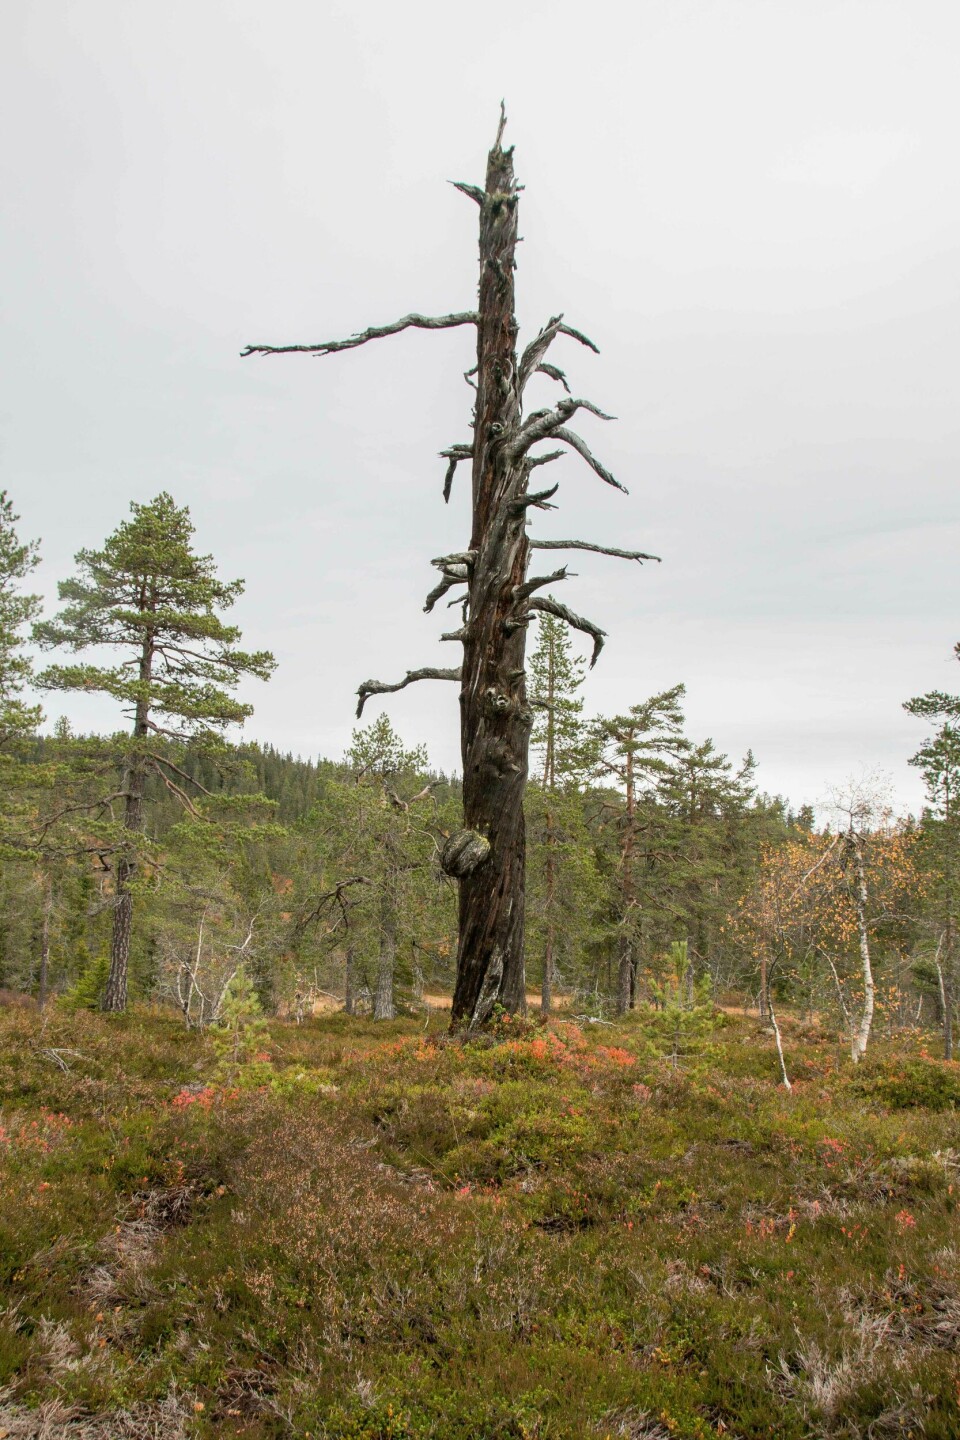 Stående dødved og gamle trær er mer vanlige i verneområdene enn utenfor. Dette er en furugadd i Vikerfjell naturreservat i Ringerike kommune i Viken fylke. En gadd er stående dødved.